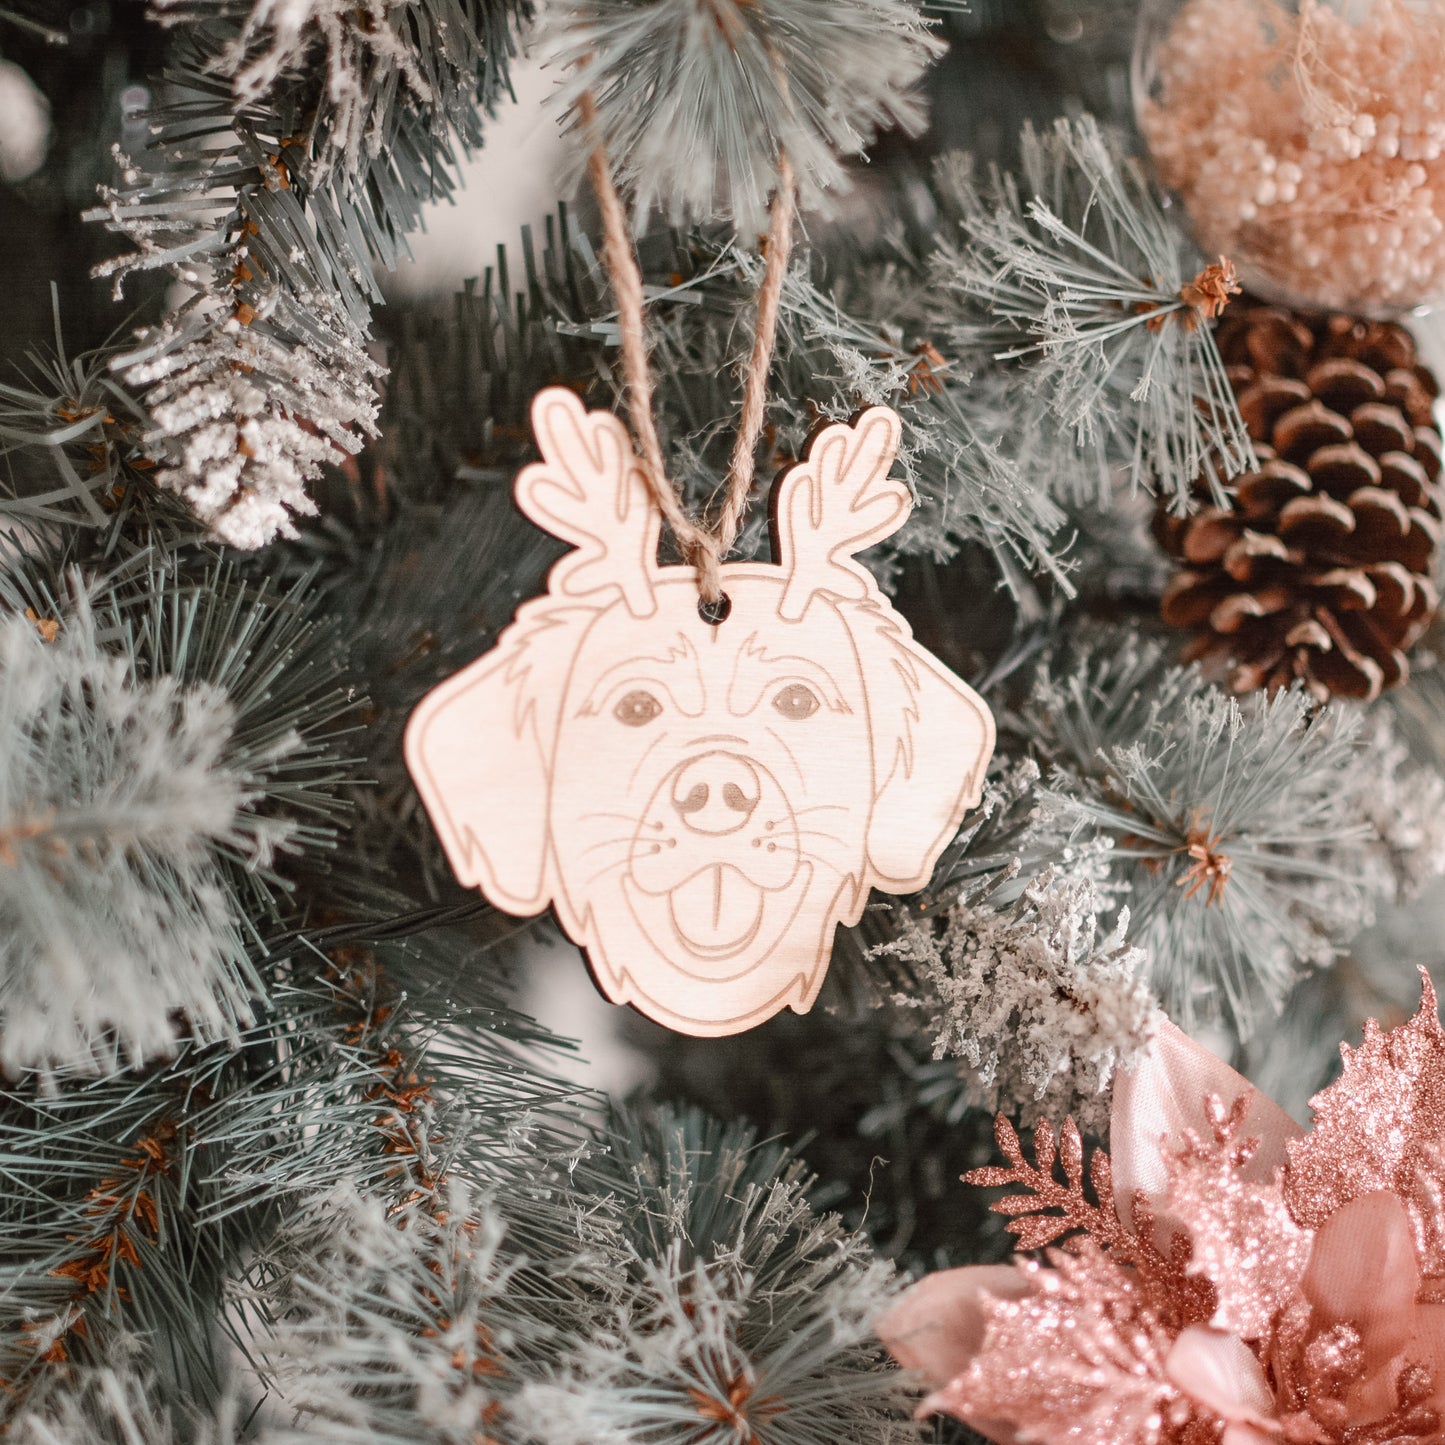 Christmas Ornament | Golden Retriever